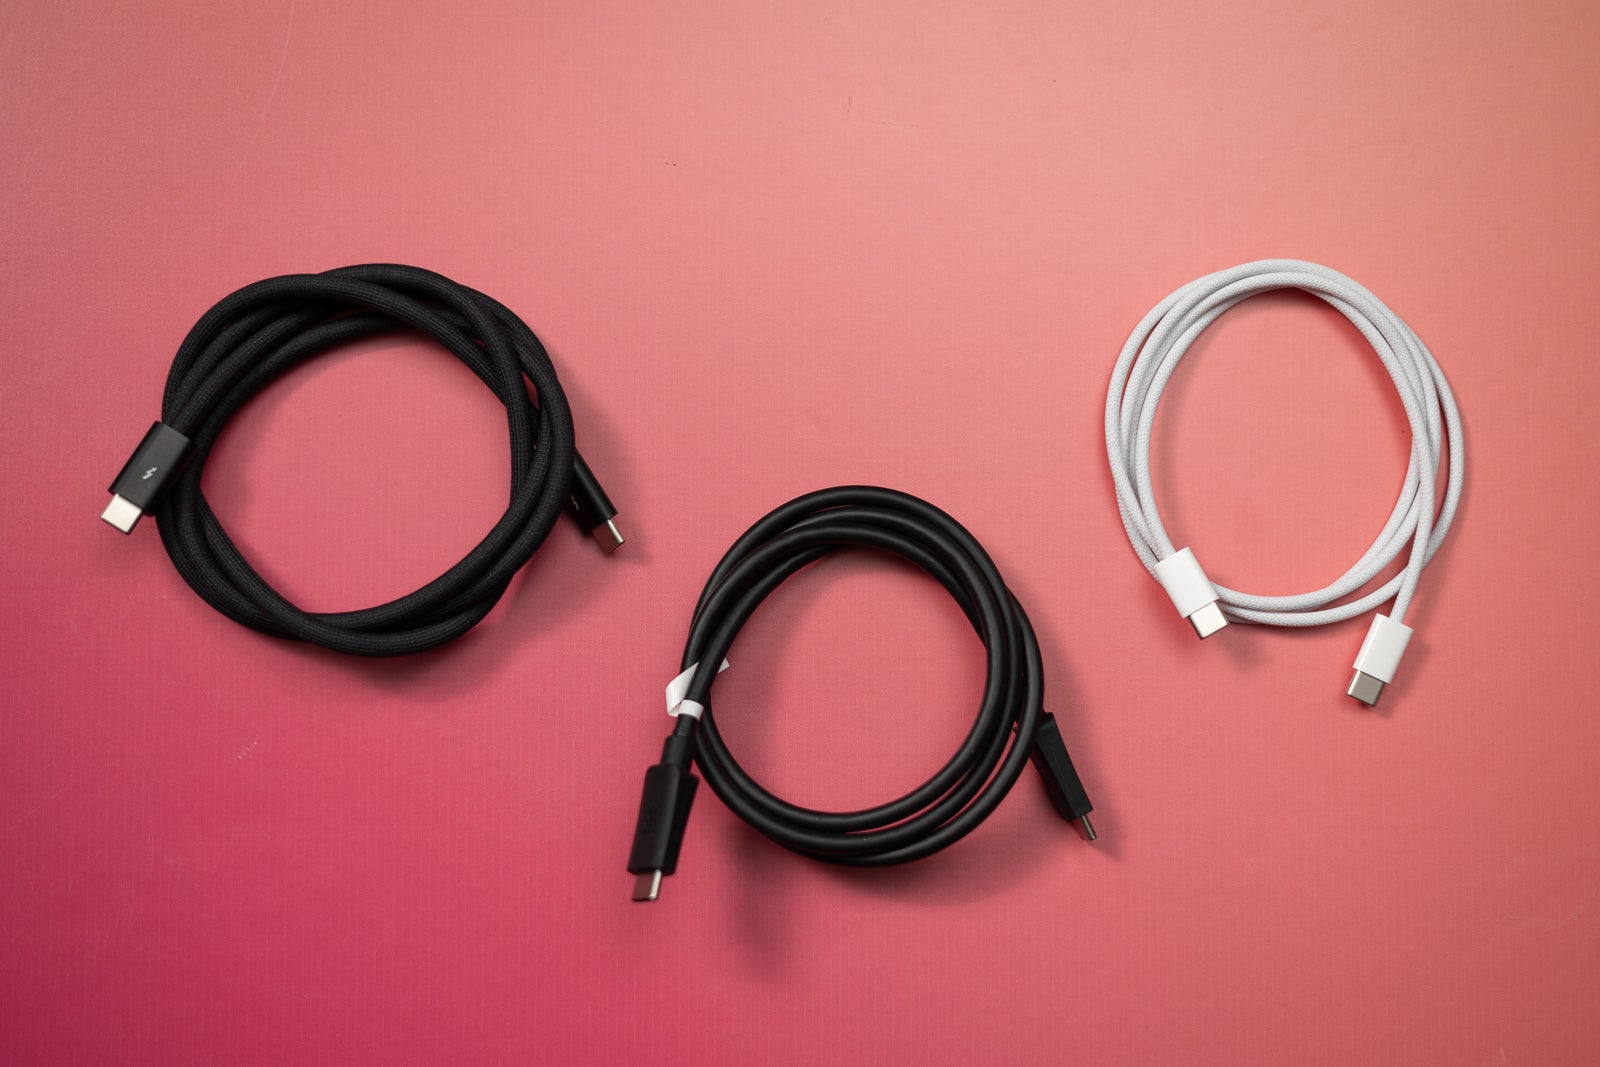 Kabel Apple Thunderbolt, kabel USB 3 seharga $15, kabel stok iPhone 15 (Kredit gambar - PhoneArena) - Kecepatan USB C iPhone 15 Pro diuji: kabel USB 3 vs kabel stok, apakah ada bedanya?